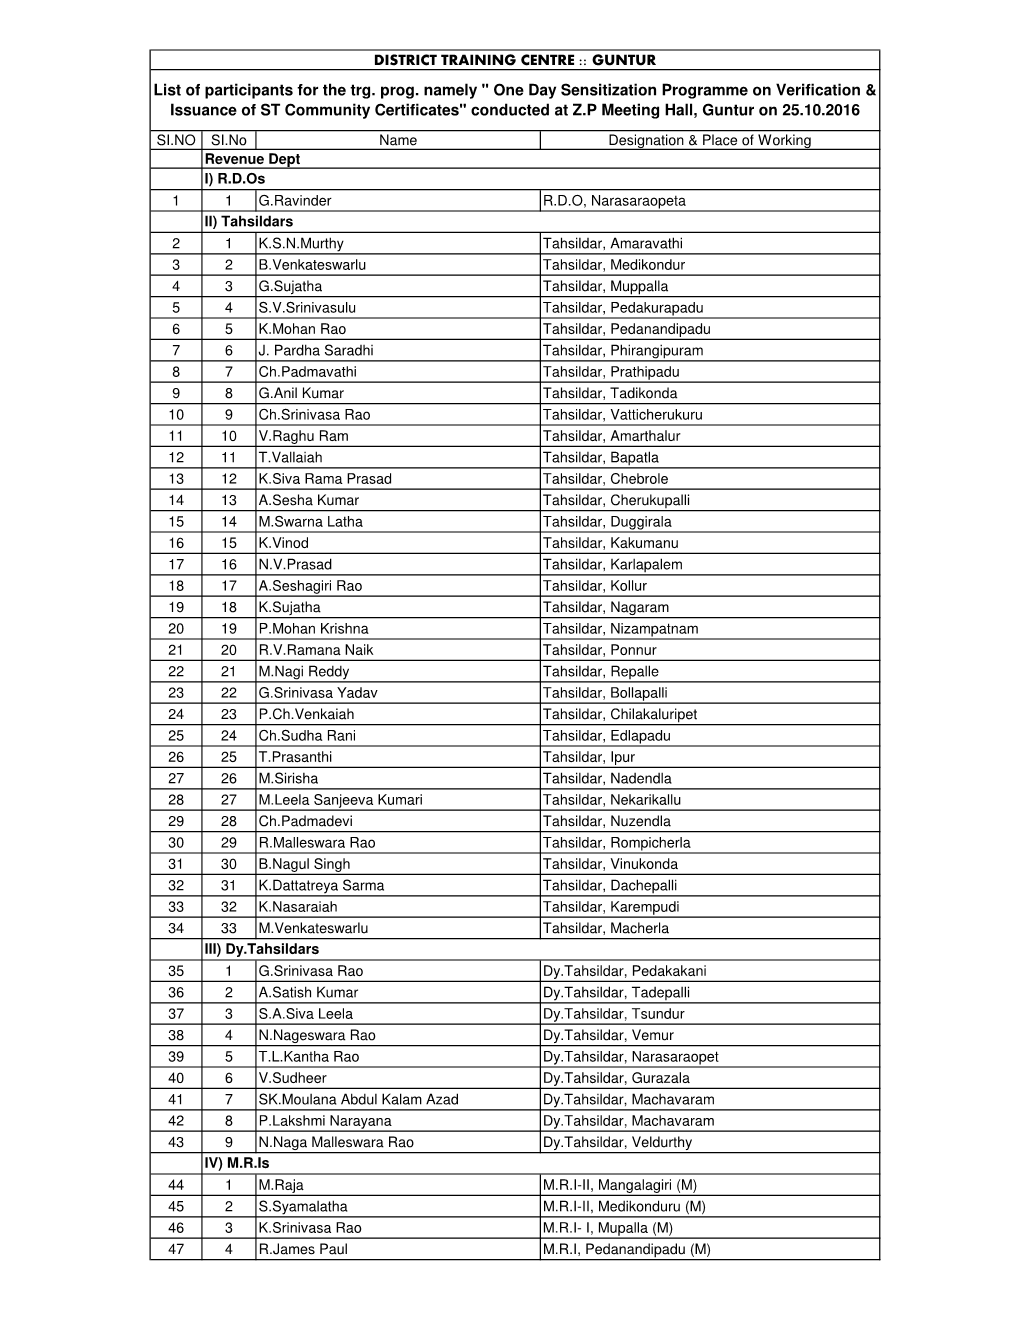 List of Participants.Xlsx